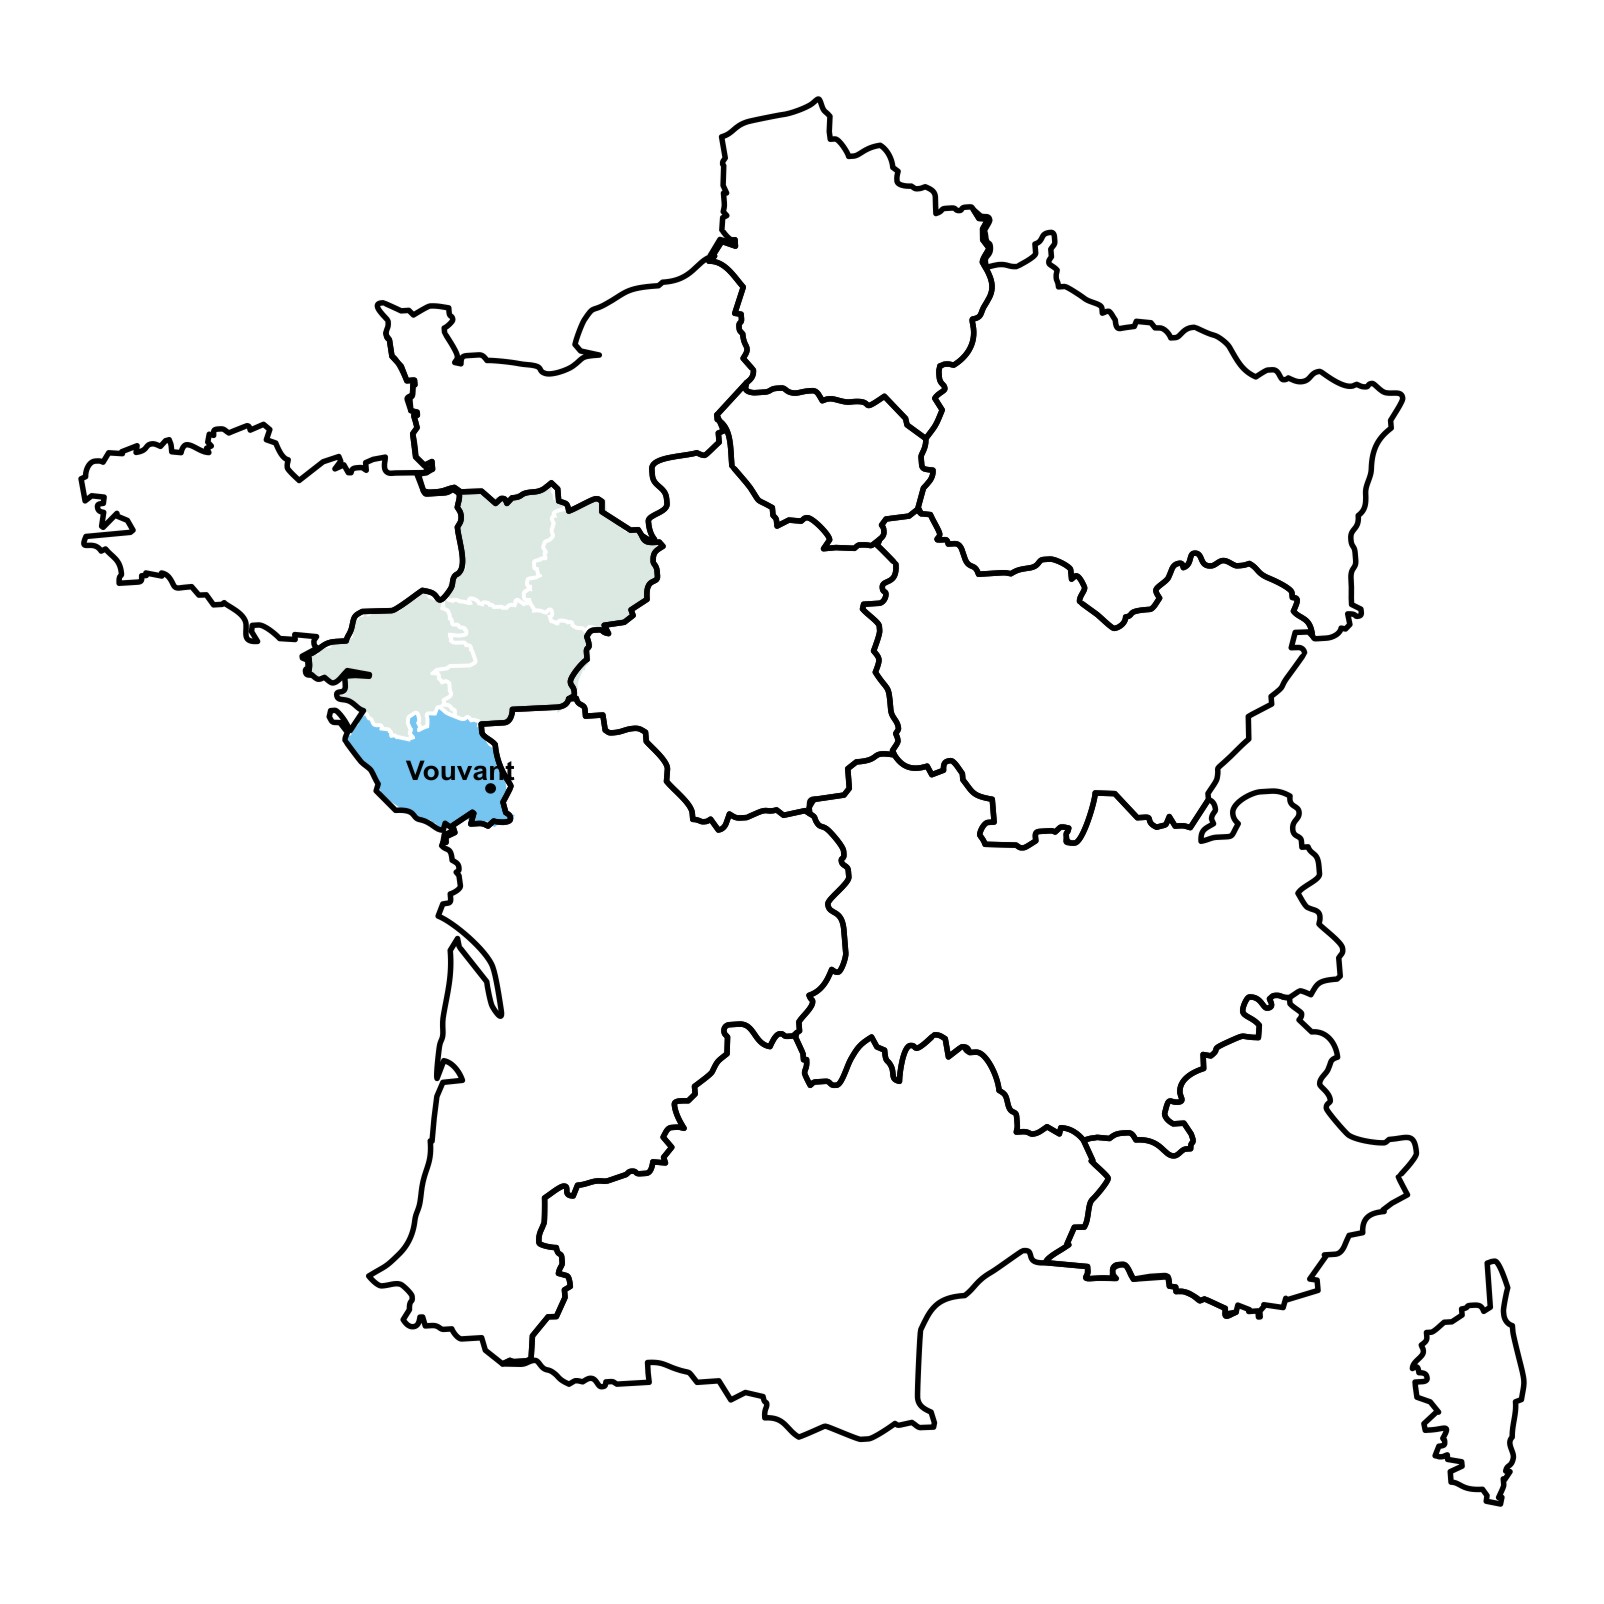 Carte de la France découpée en régions (fond blanc et contour noir) et la région Pays de la Loire découpée en Départements (fond gris clair, contour blanc) et le département de la Vendée avec inscription ville de Vouvant (fond bleu)